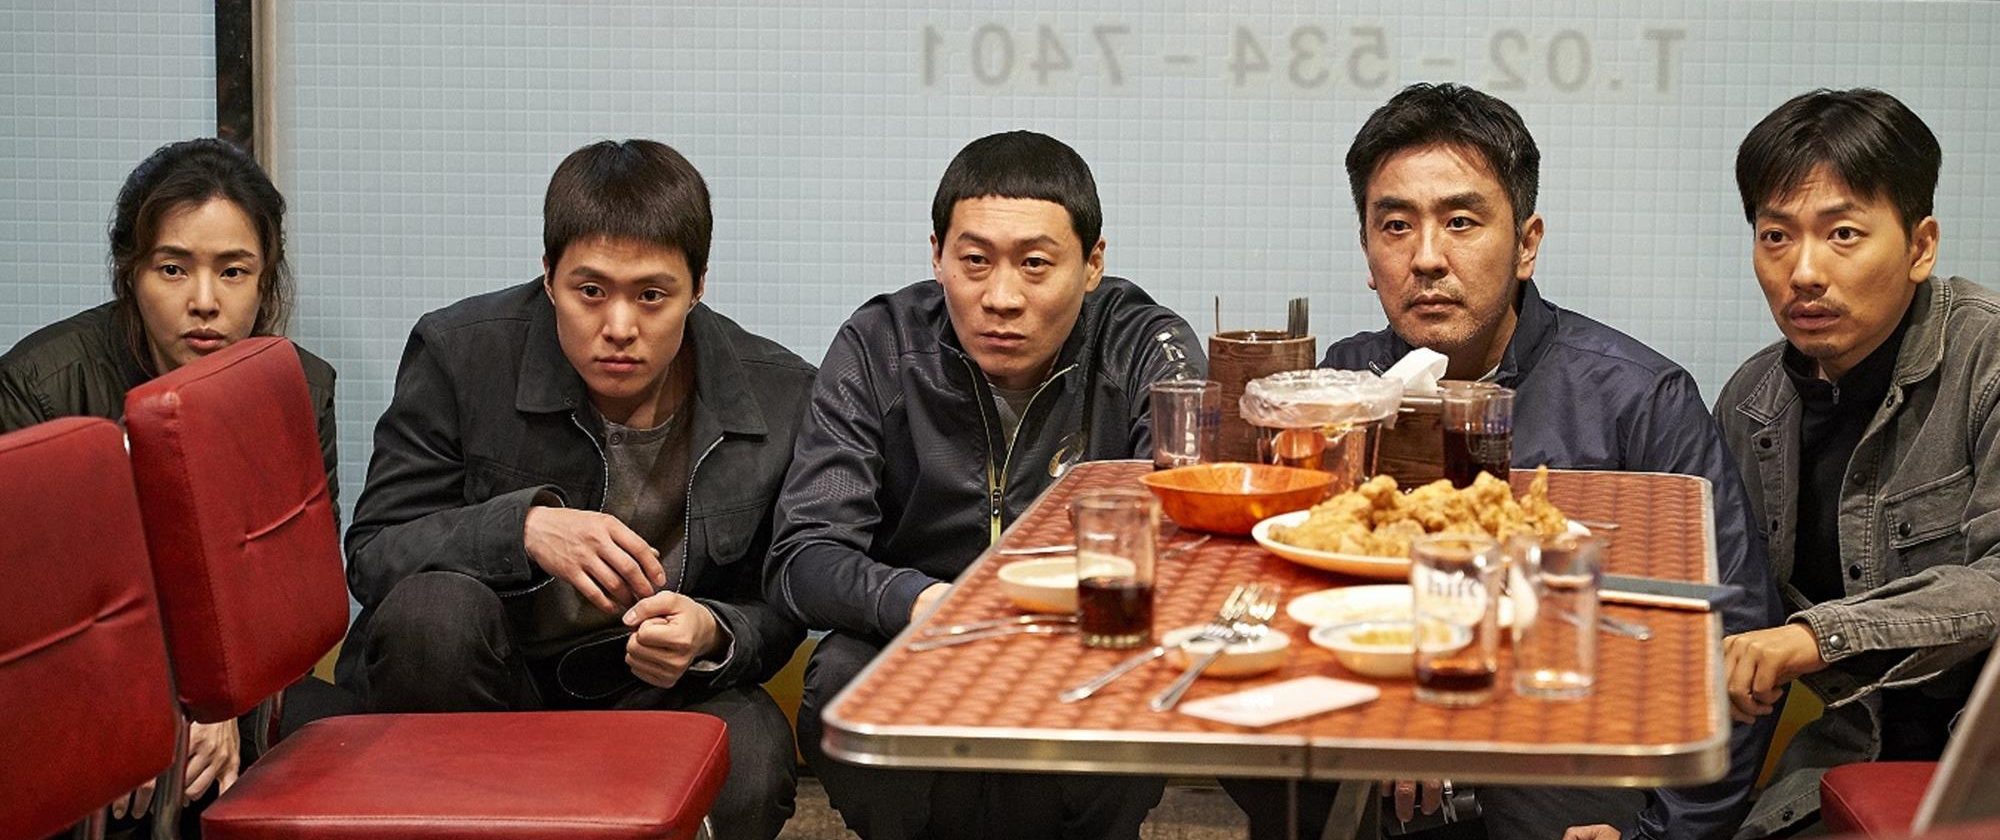 Extrait du film sud-coréen "Extreme Job" de Lee Byeong-heon. (Source : Screen Daily)